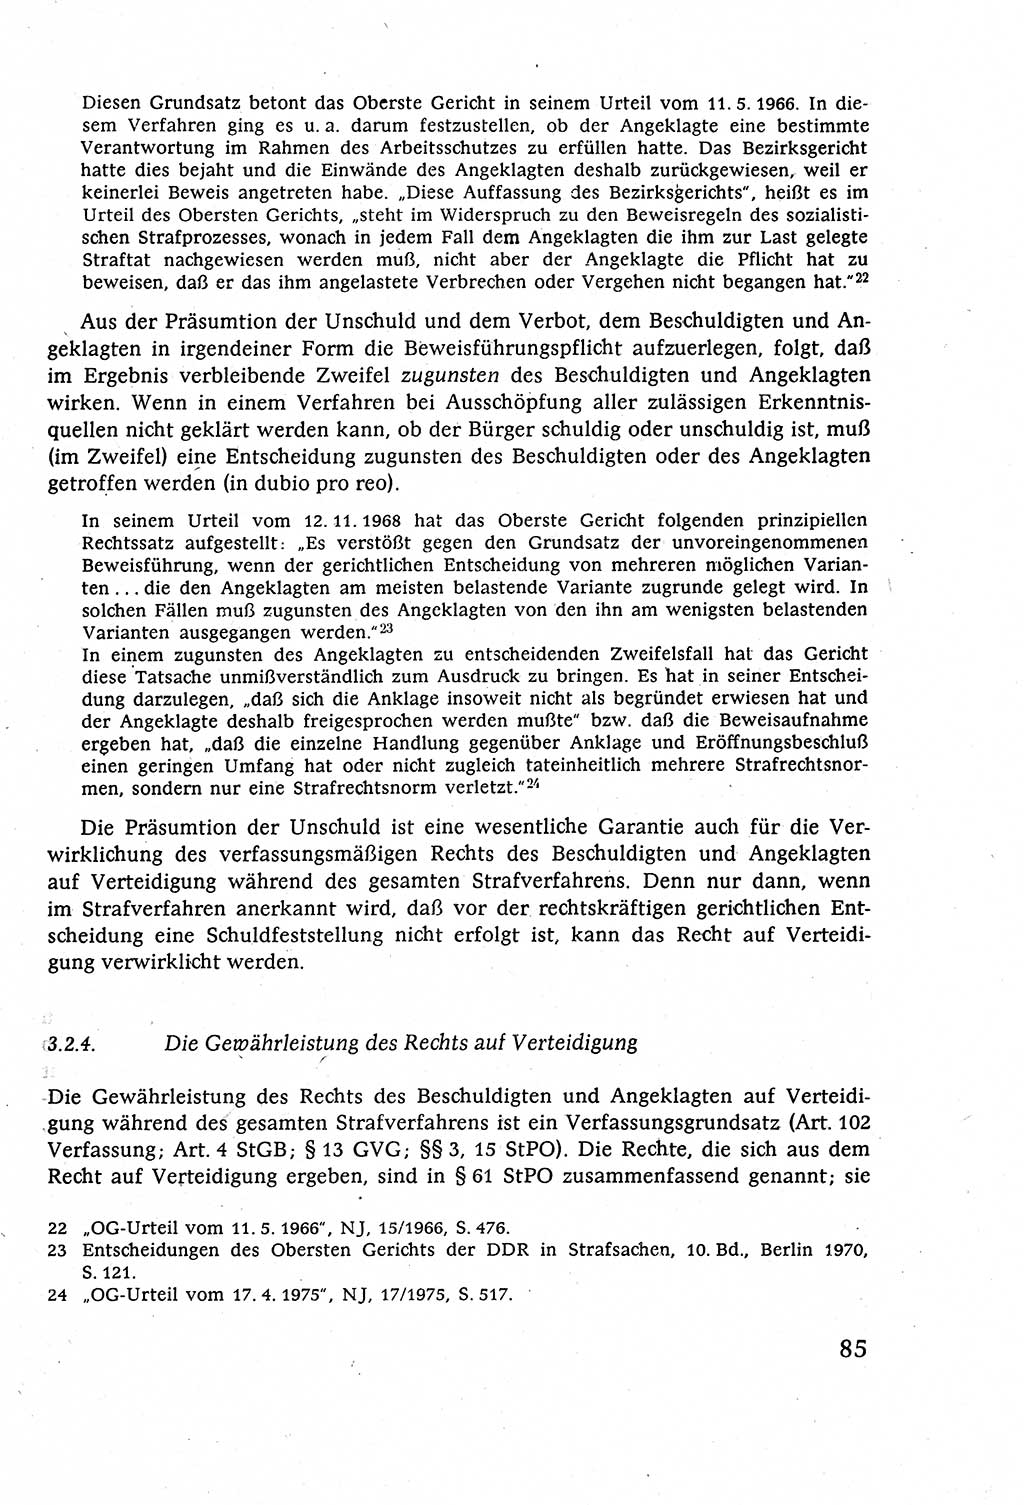 Strafverfahrensrecht [Deutsche Demokratische Republik (DDR)], Lehrbuch 1977, Seite 85 (Strafverf.-R. DDR Lb. 1977, S. 85)